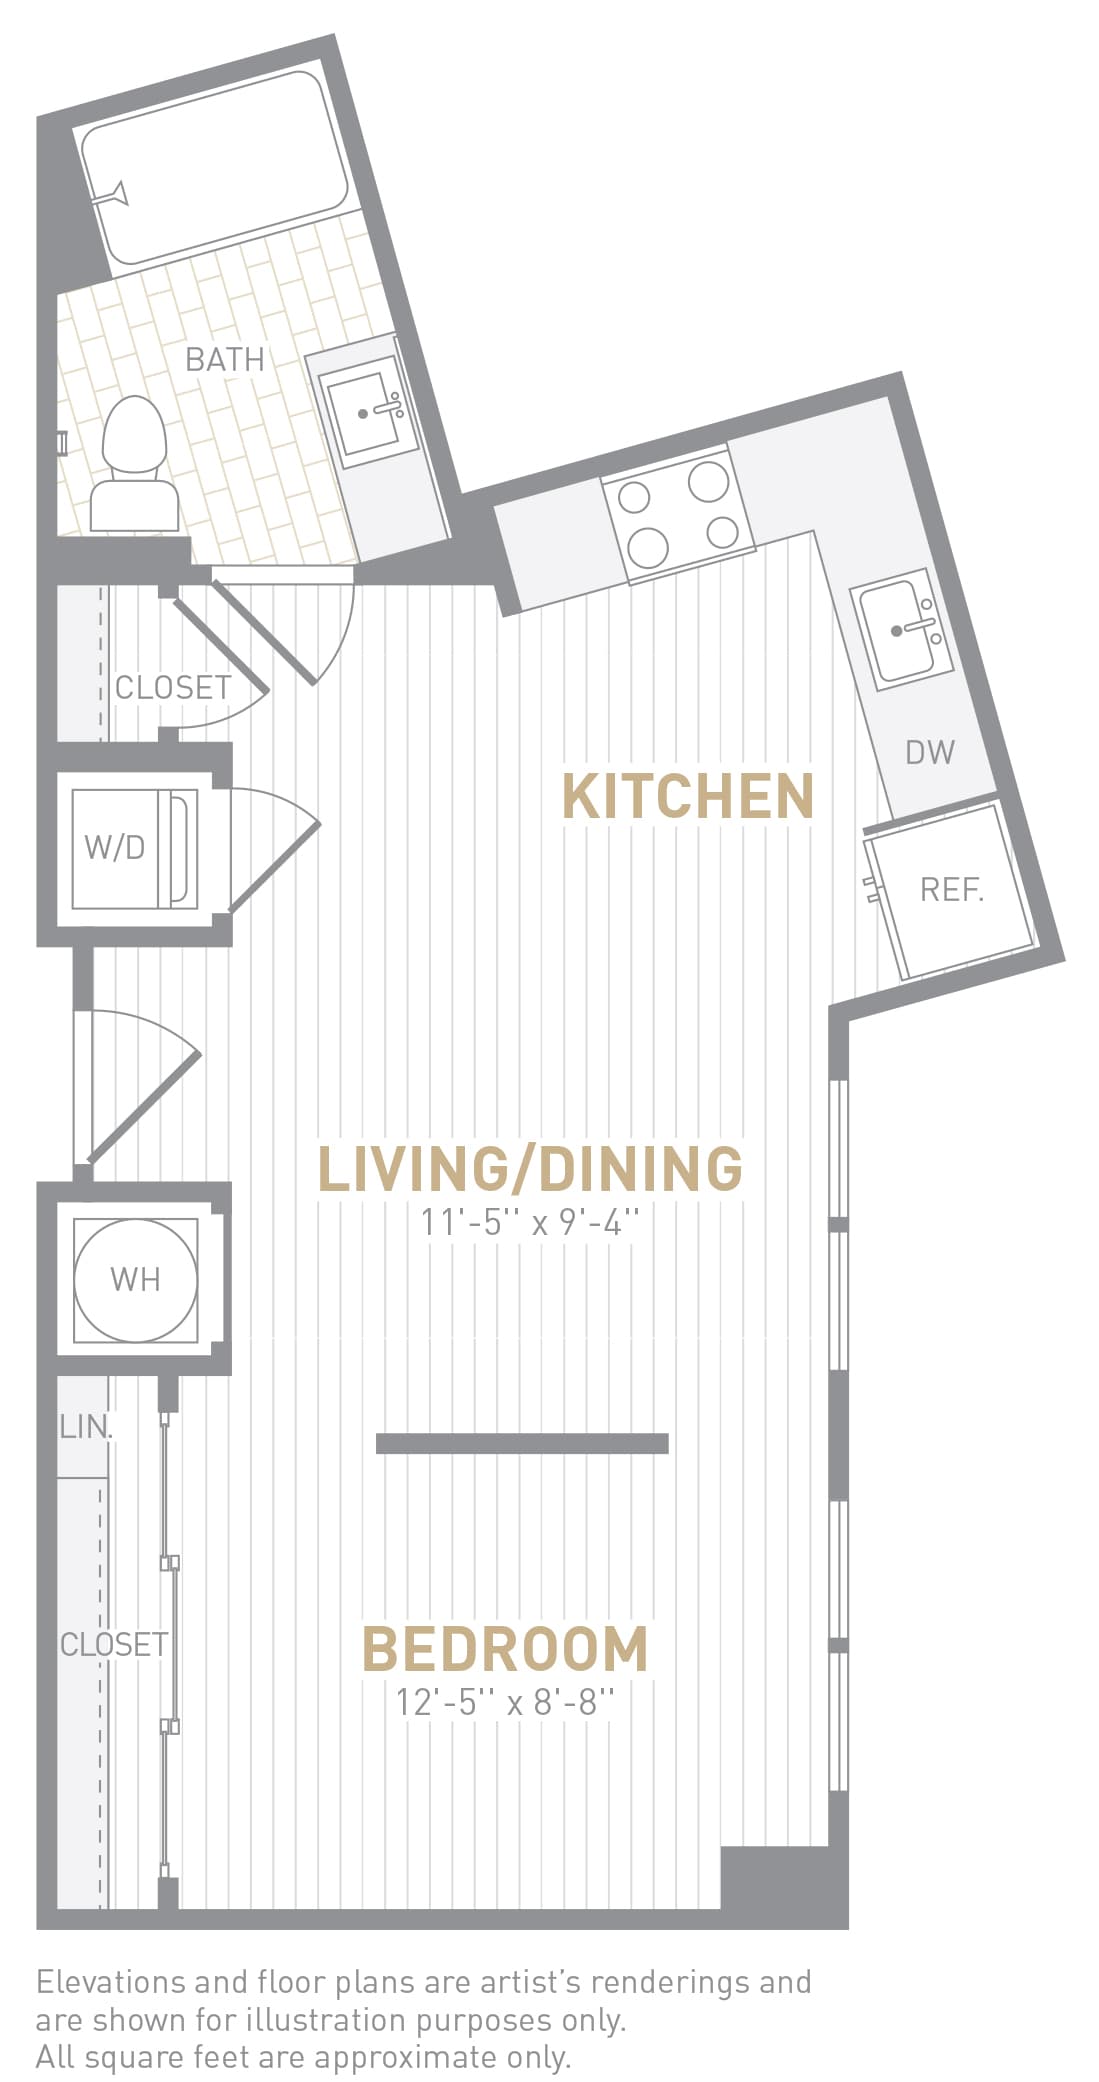 View Insignia on M Apartment Floor Plans Studios, 1, 2